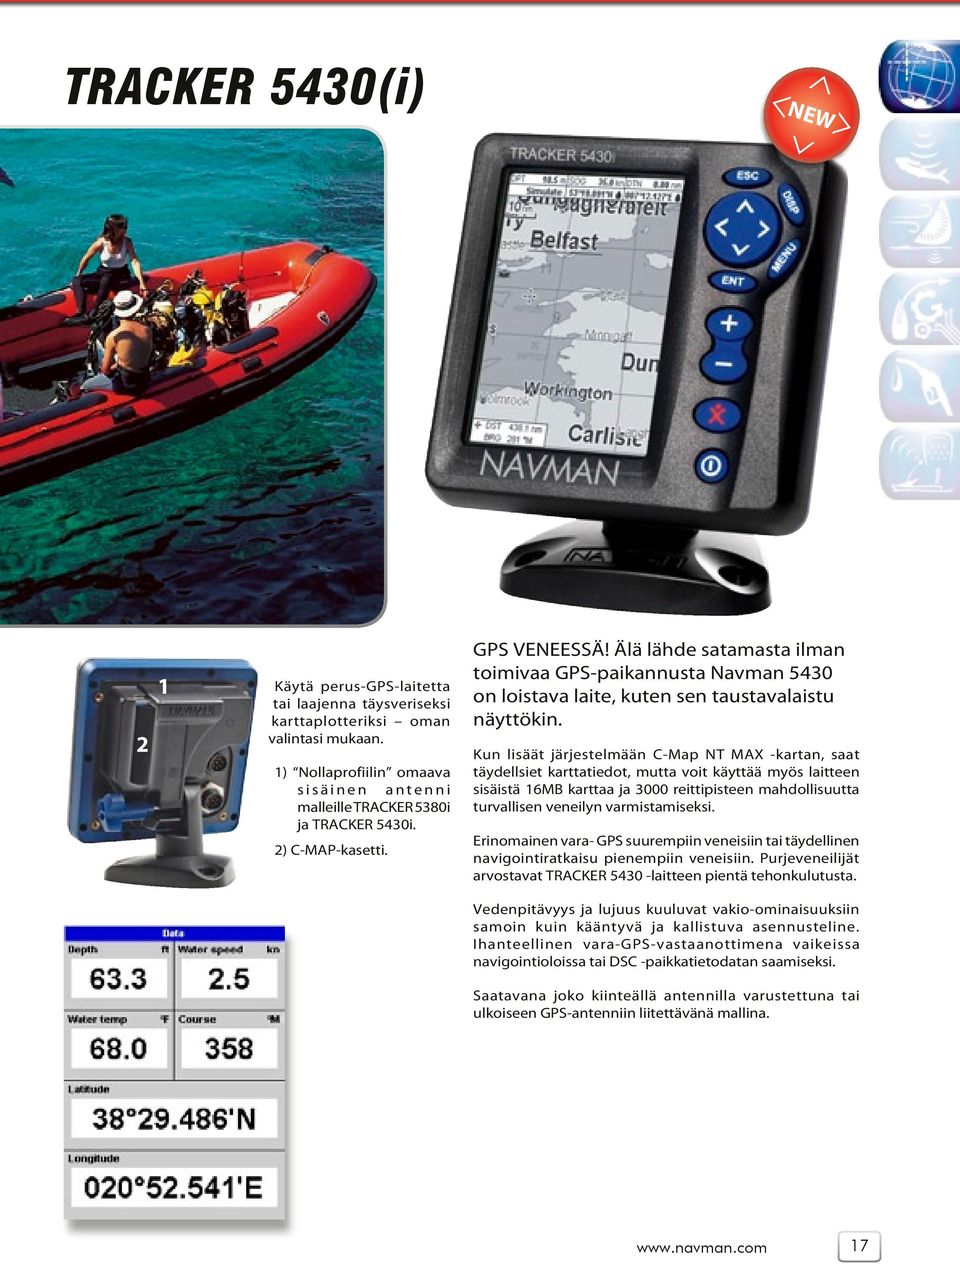 Älä lähde satamasta ilman toimivaa GPS-paikannusta Navman 5430 on loistava laite, kuten sen taustavalaistu näyttökin.